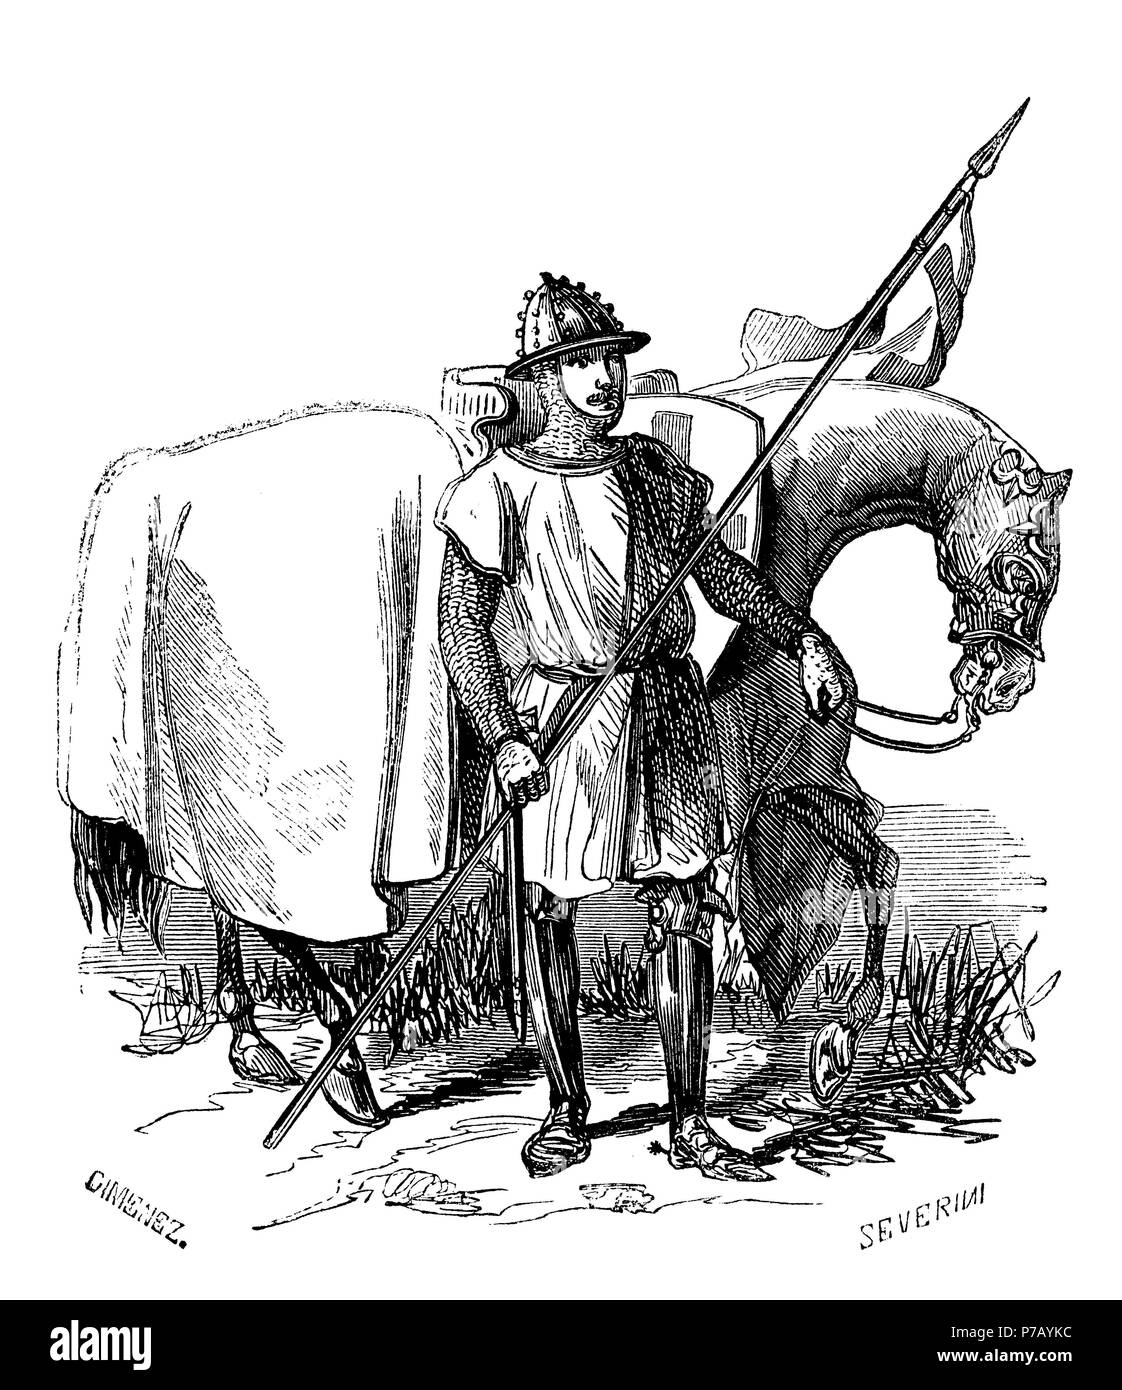 Catalunya. Soldado de caballería de la Corona de Aragón en el siglo XIV. Grabado de 1925. Stock Photo